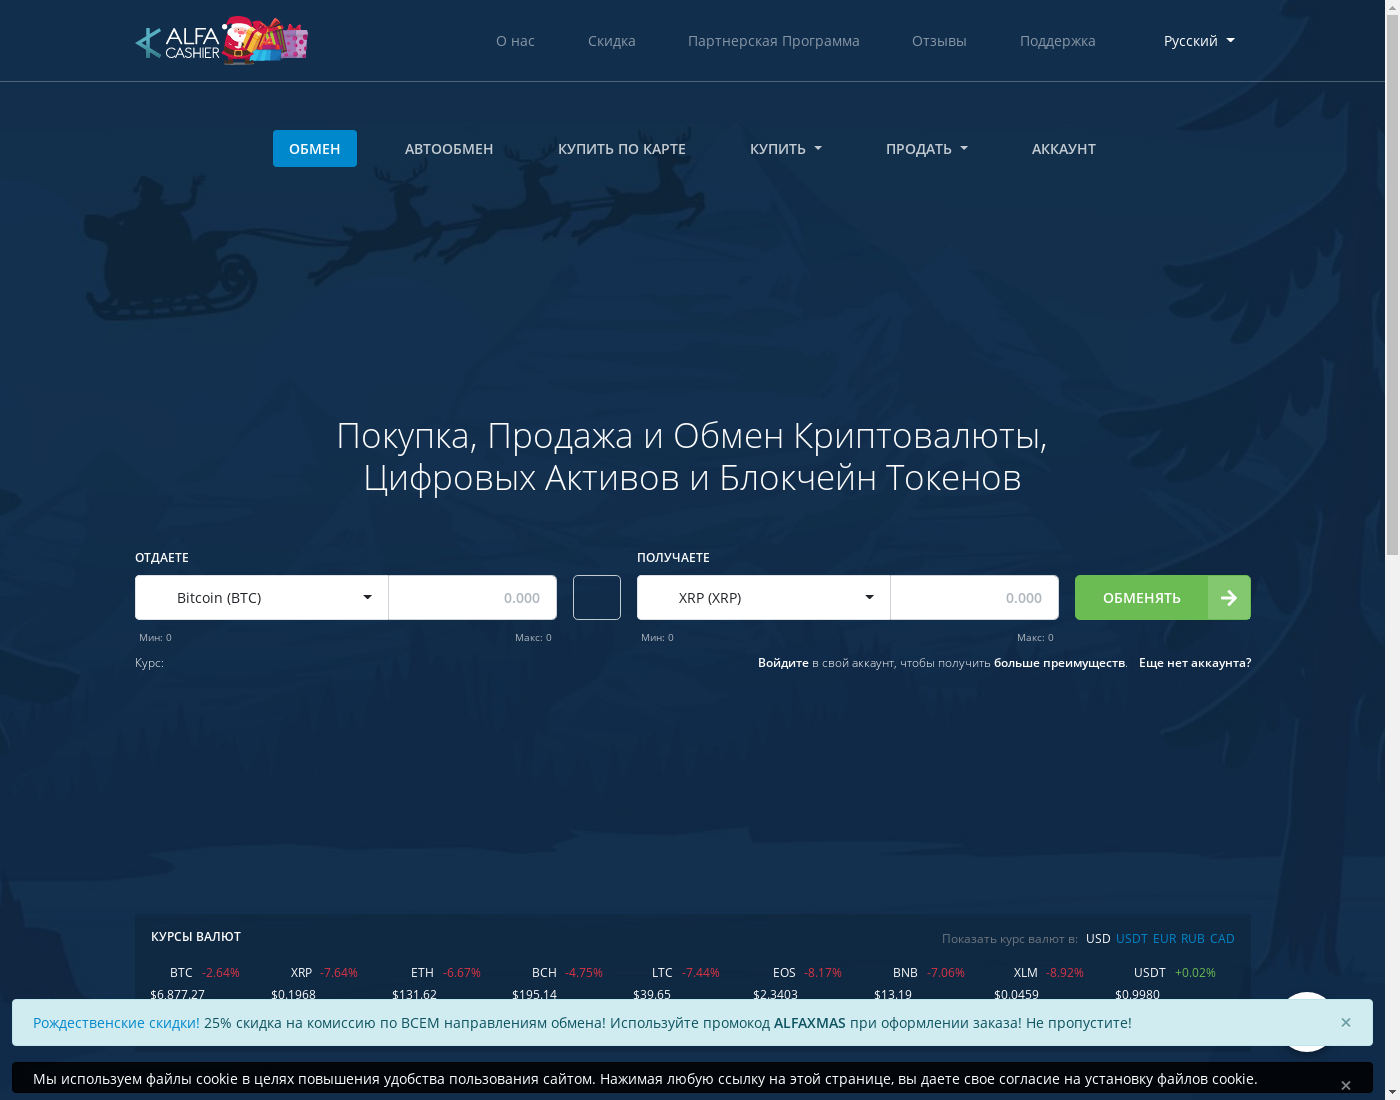 AlfaCashier: вебсайт на Русский